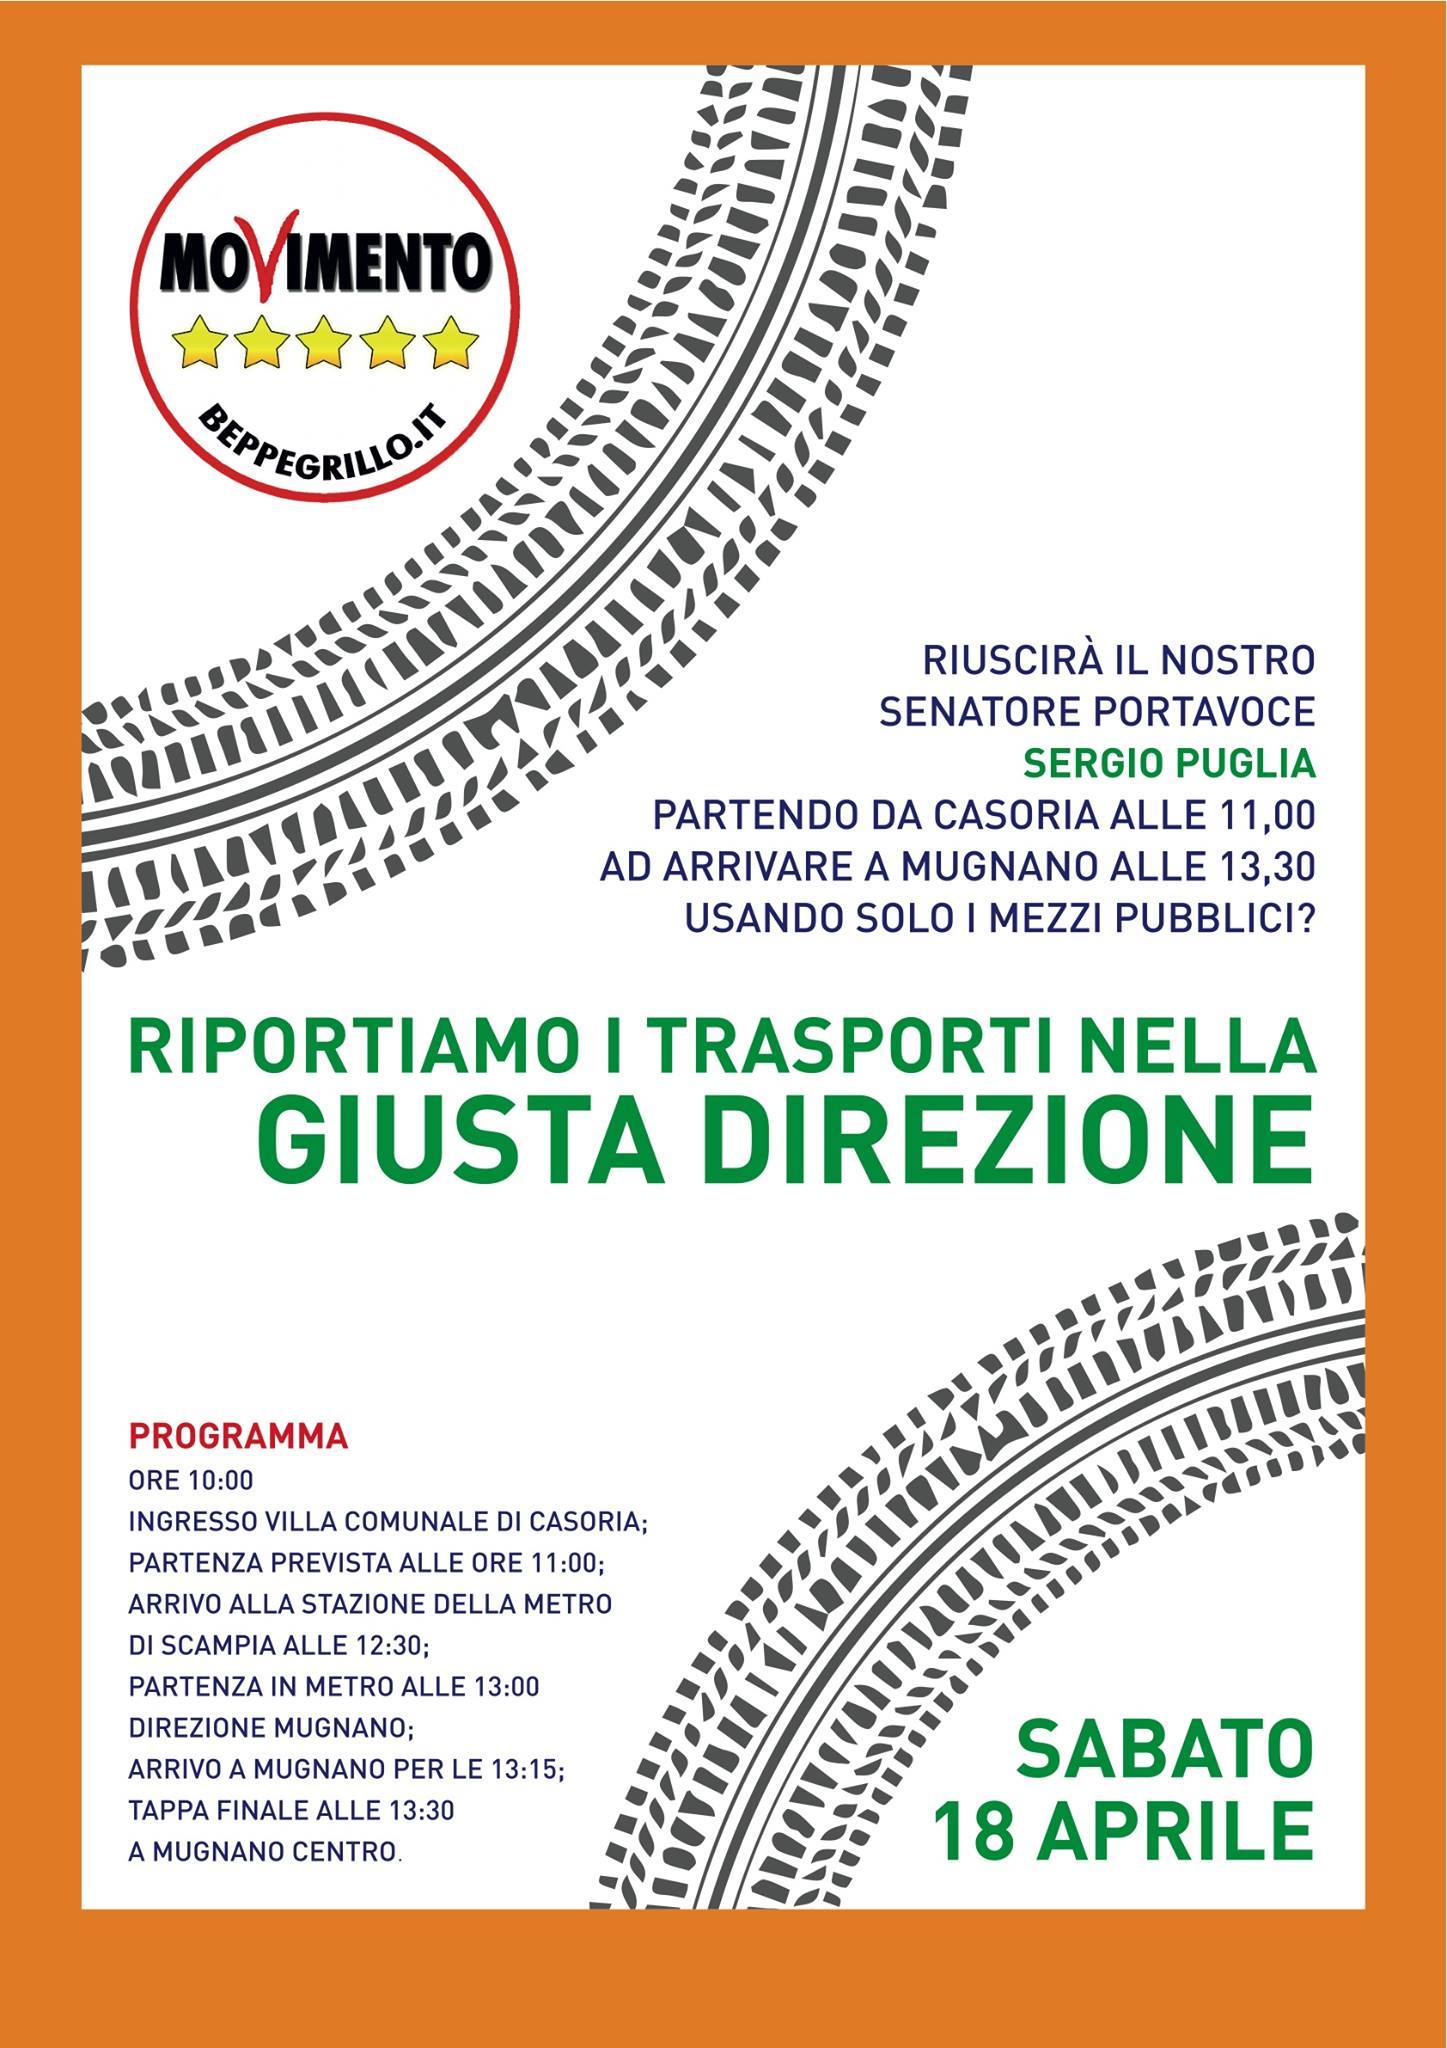  Trasporti, domani tour M5S sui mezzi pubblici della provincia di Napoli